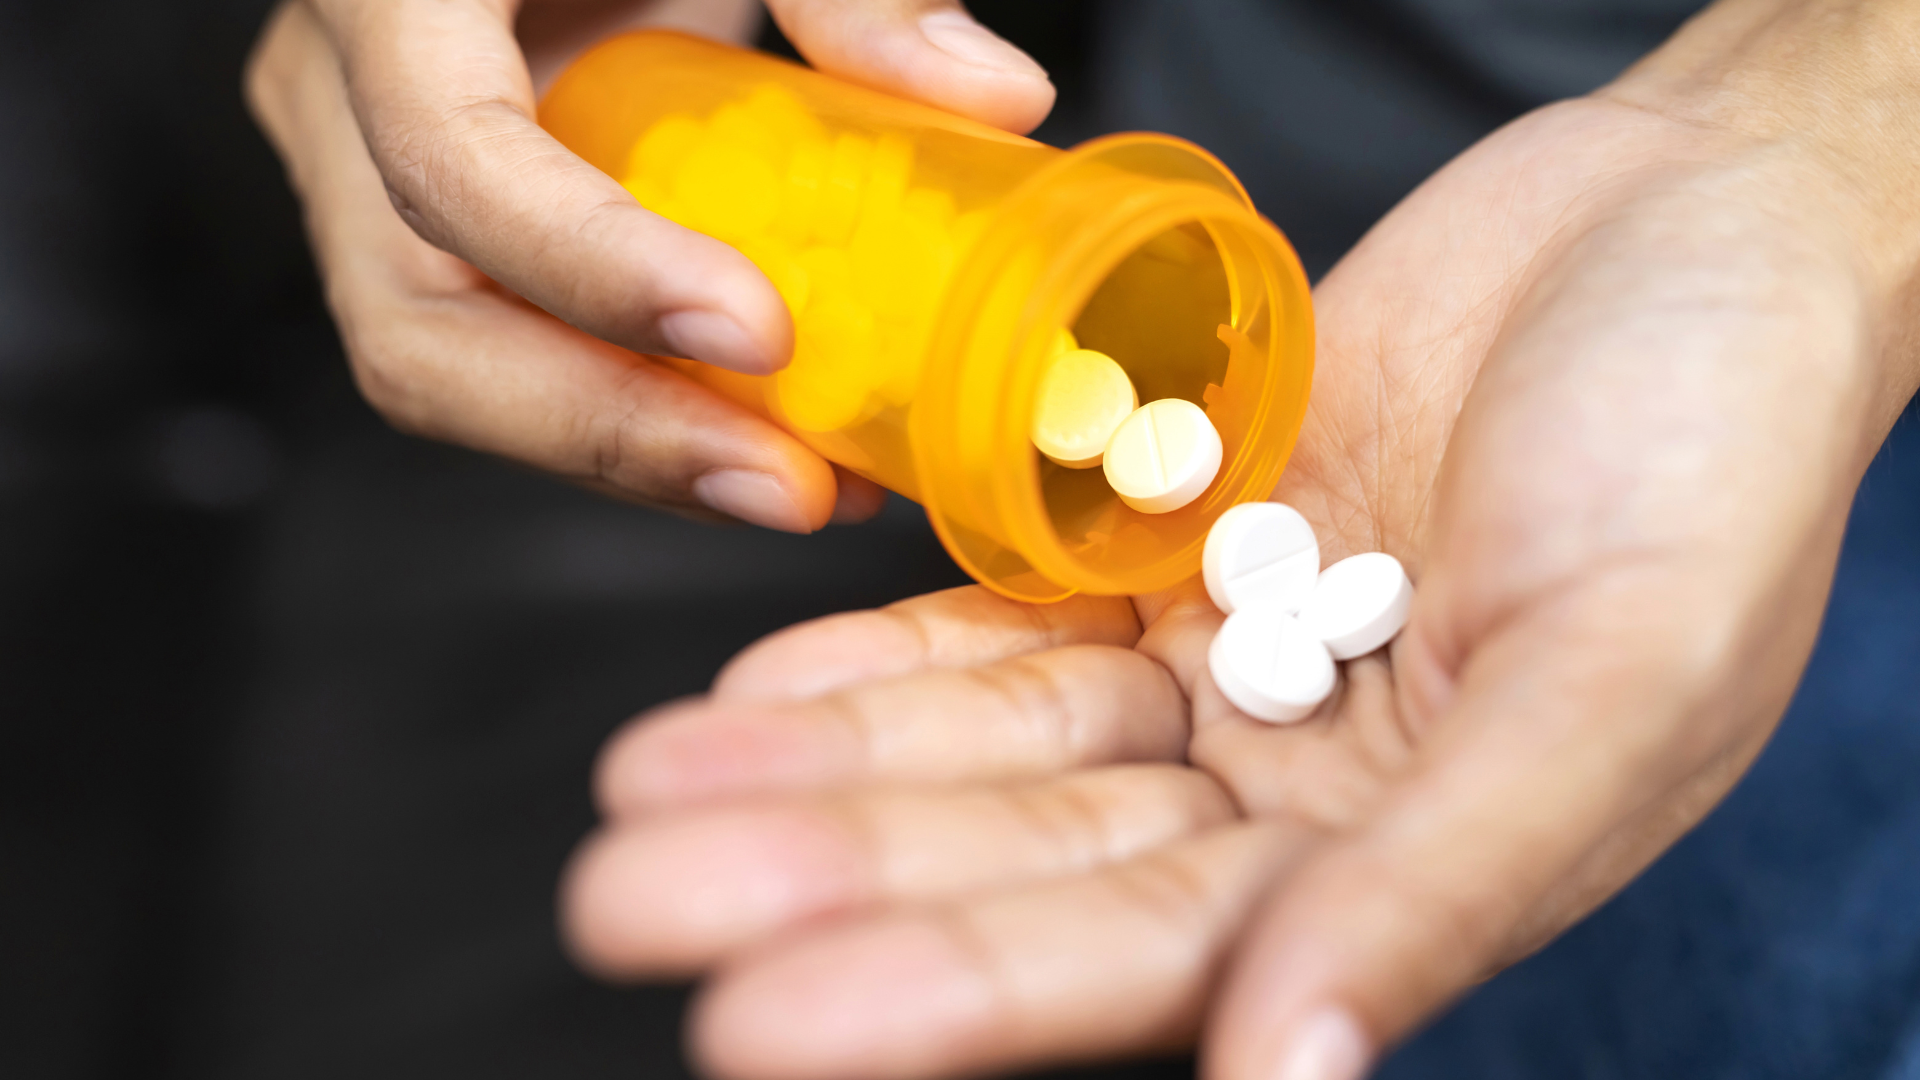 Farmacéutica Teva llega a acuerdo de 500 millones por su rol en la crisis de opioides en Nueva York